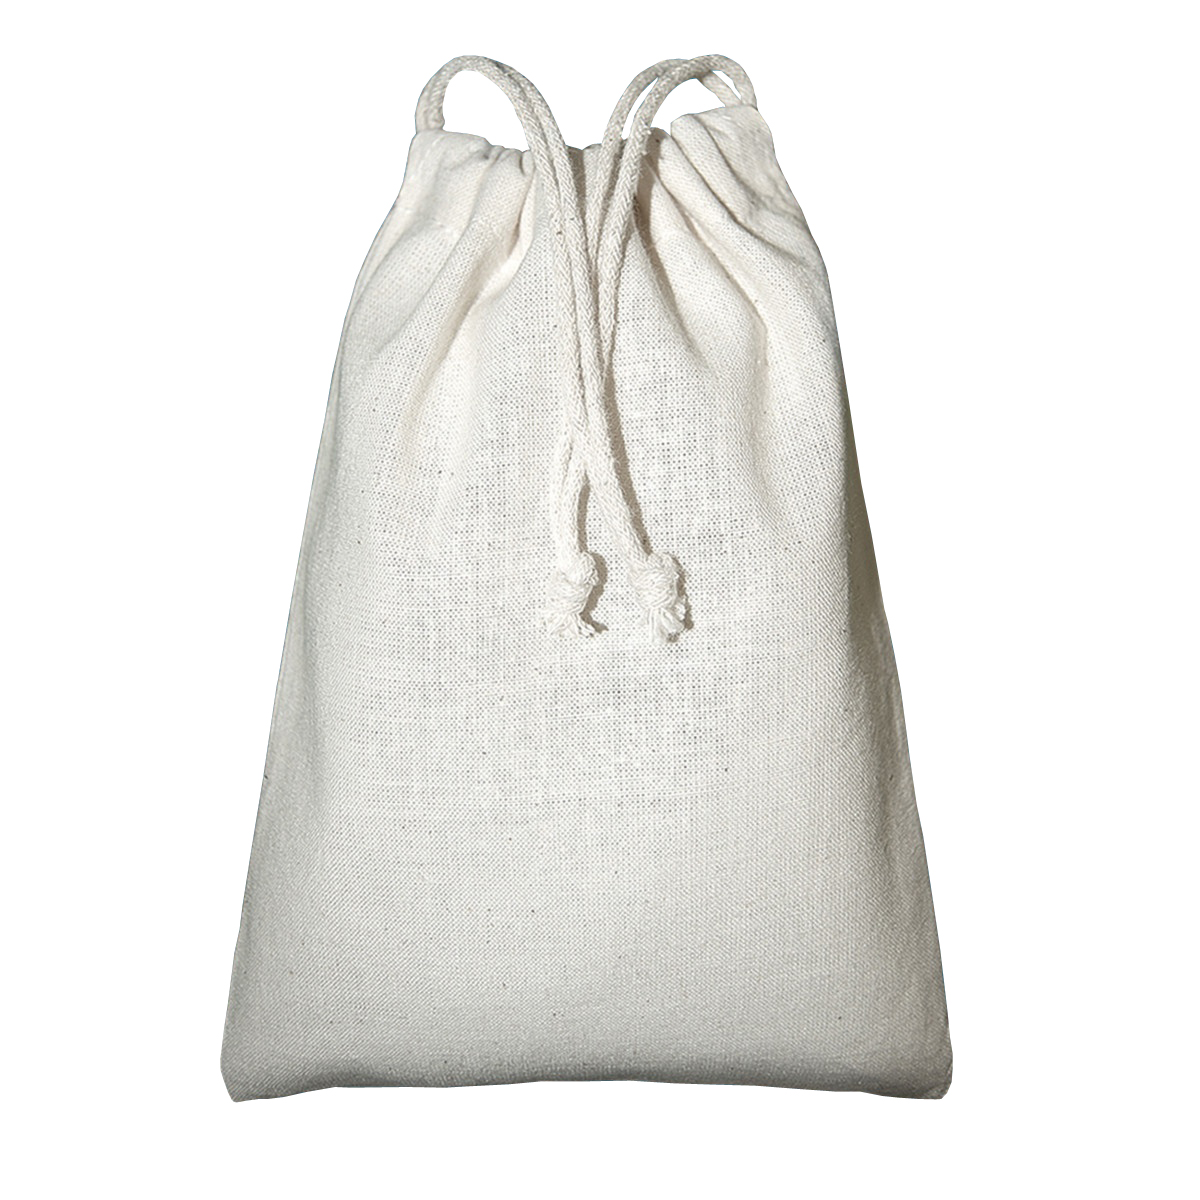 Mochila Saco Bags By Jassz Spruce